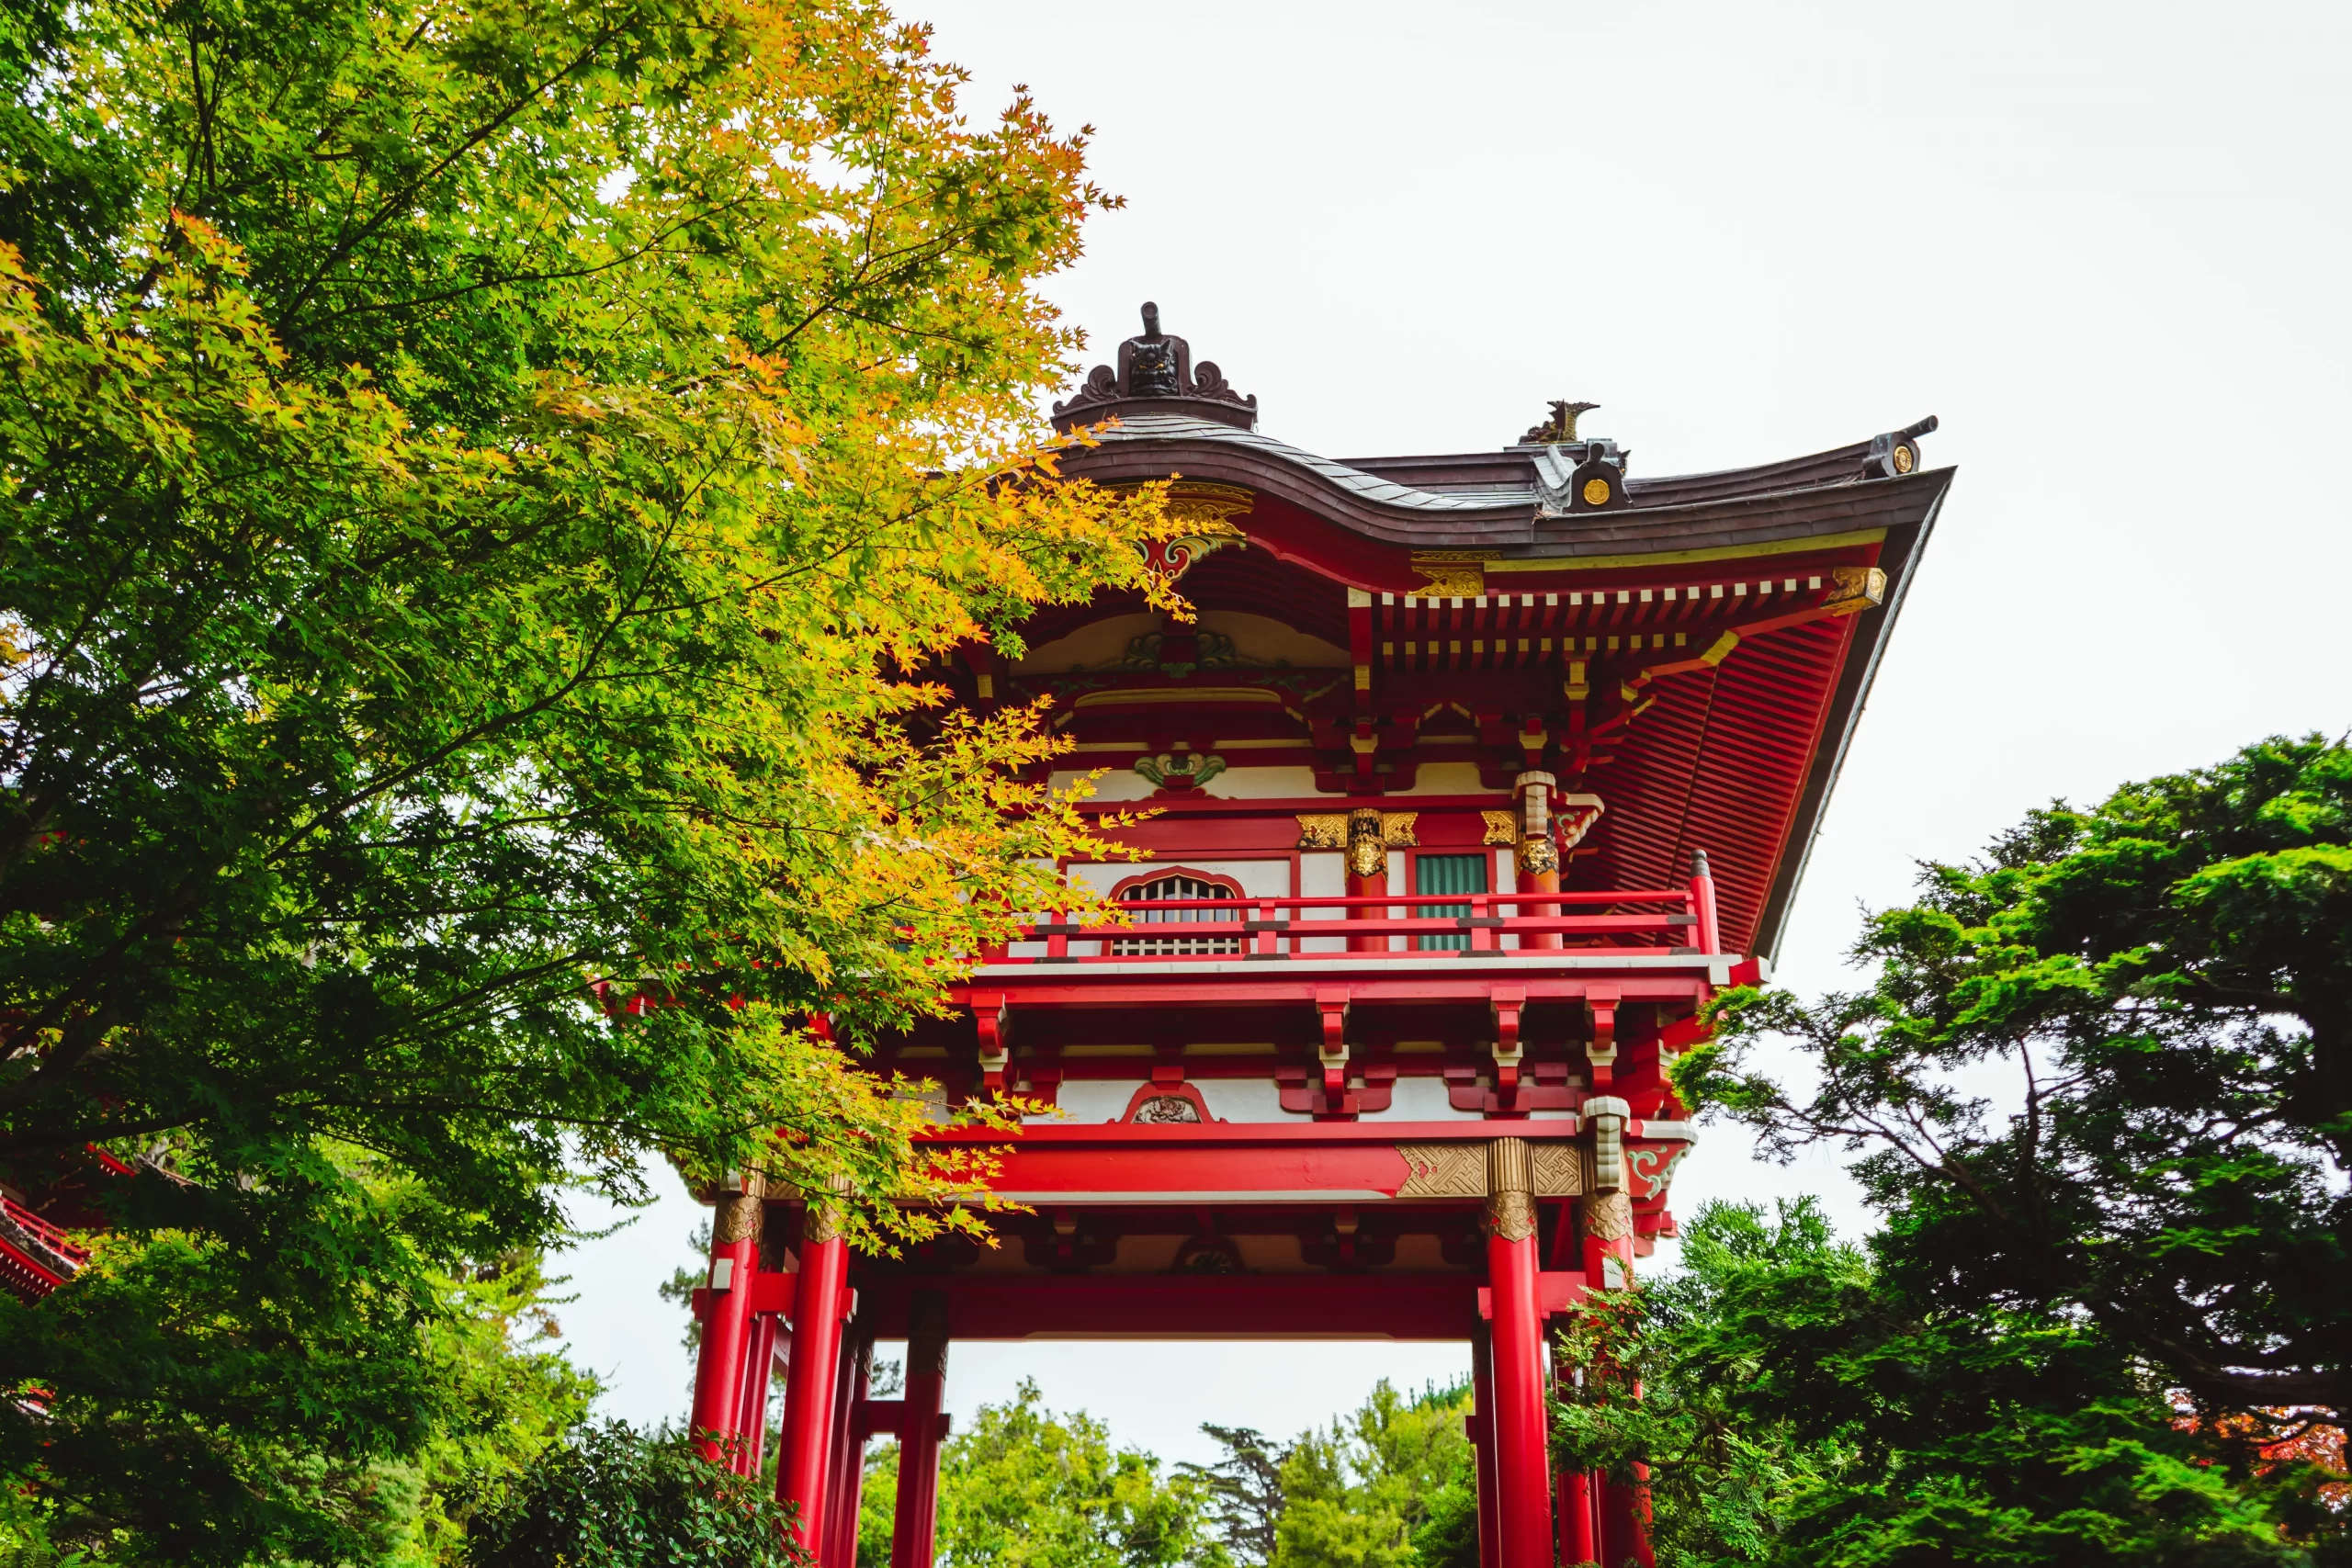 باغودة حمراء في حديقة محاطة بالأشجار في احتفال الشاي في اليابان.